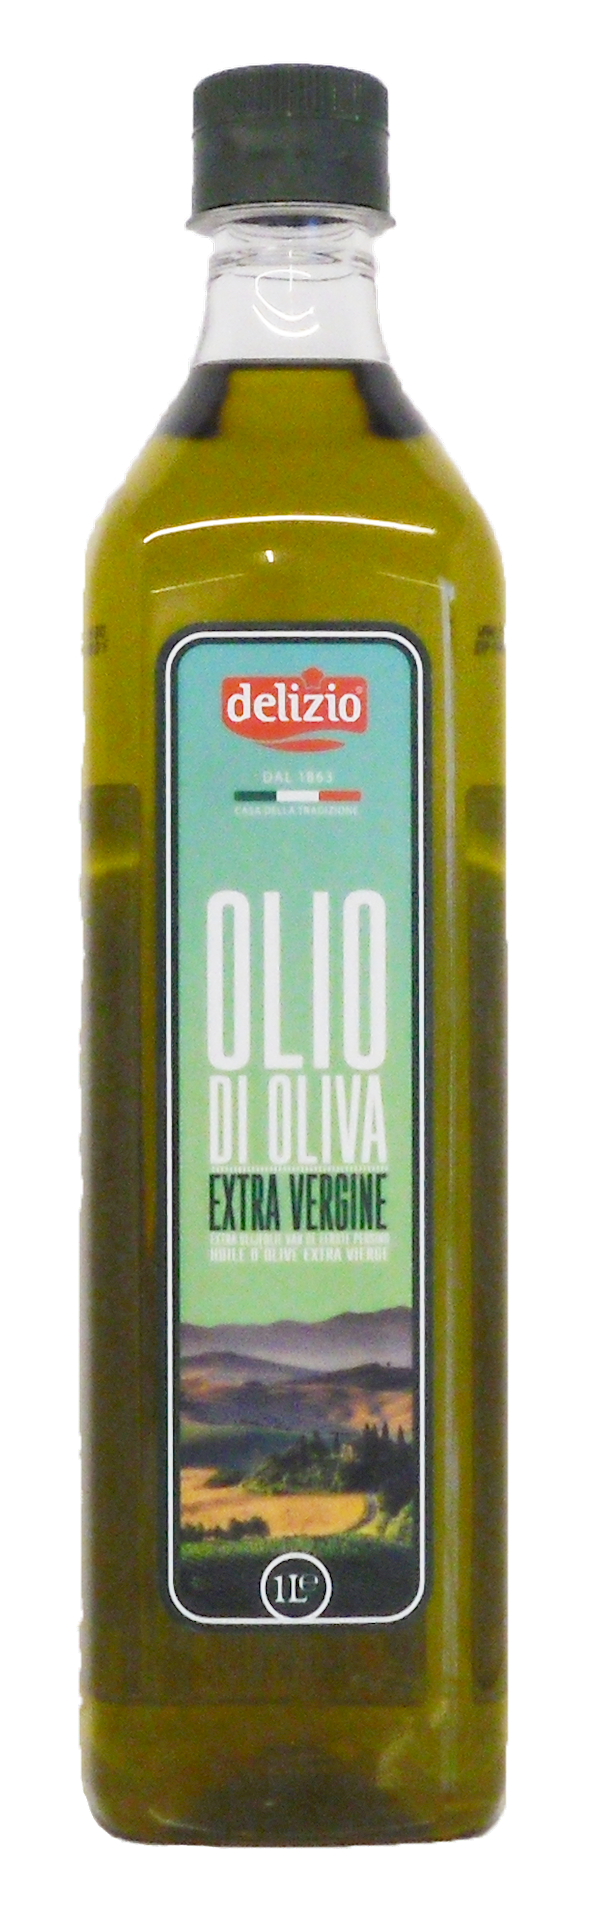 72170 Olio di oliva extra vergine 1 ltr